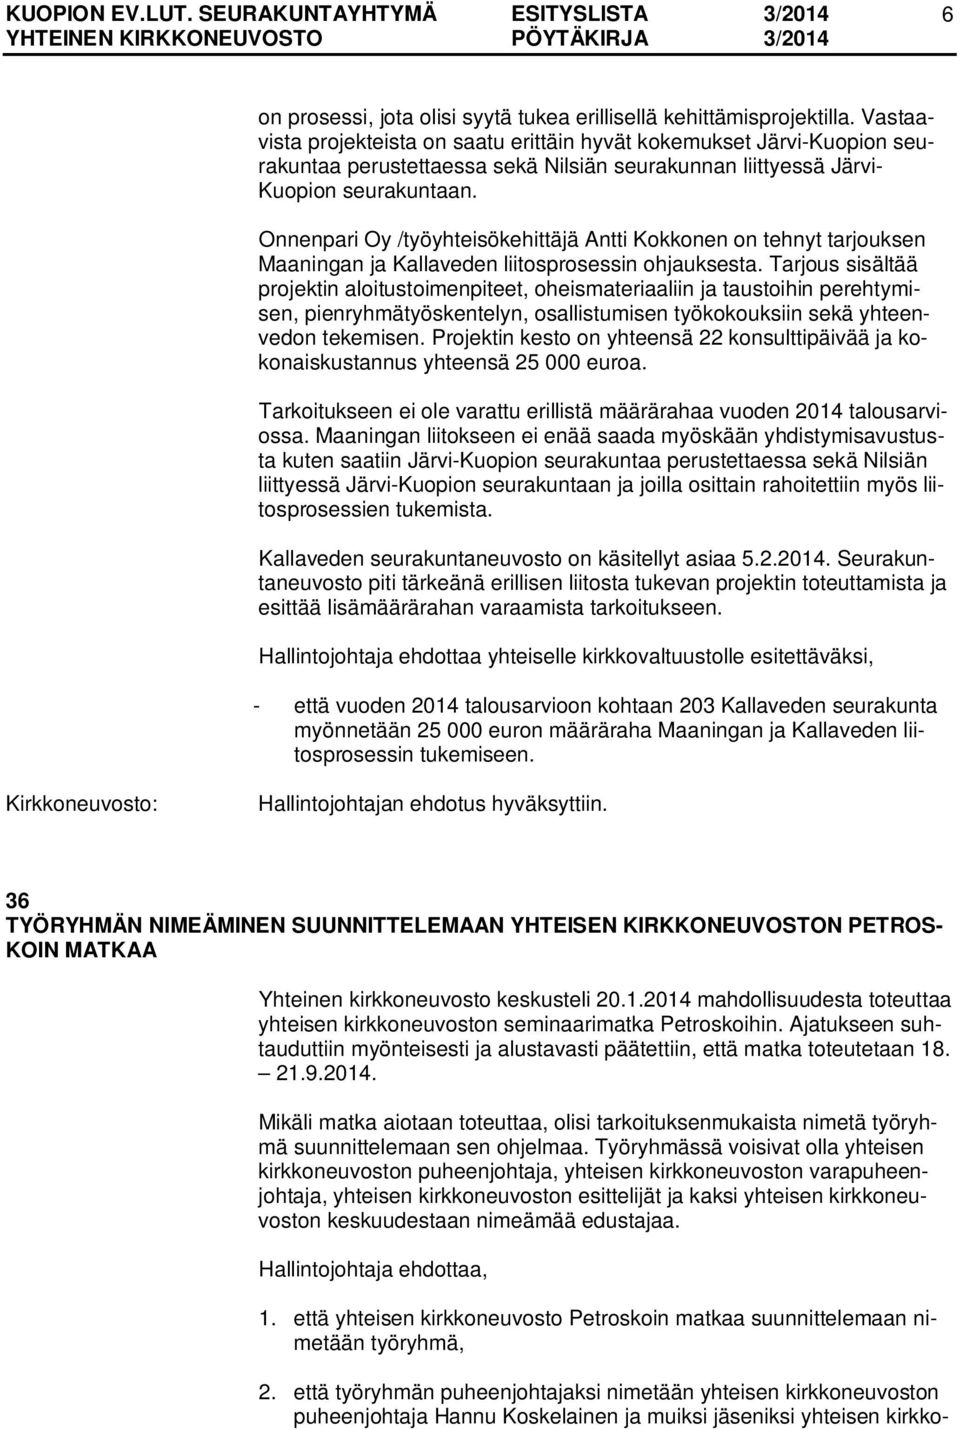 Onnenpari Oy /työyhteisökehittäjä Antti Kokkonen on tehnyt tarjouksen Maaningan ja Kallaveden liitosprosessin ohjauksesta.